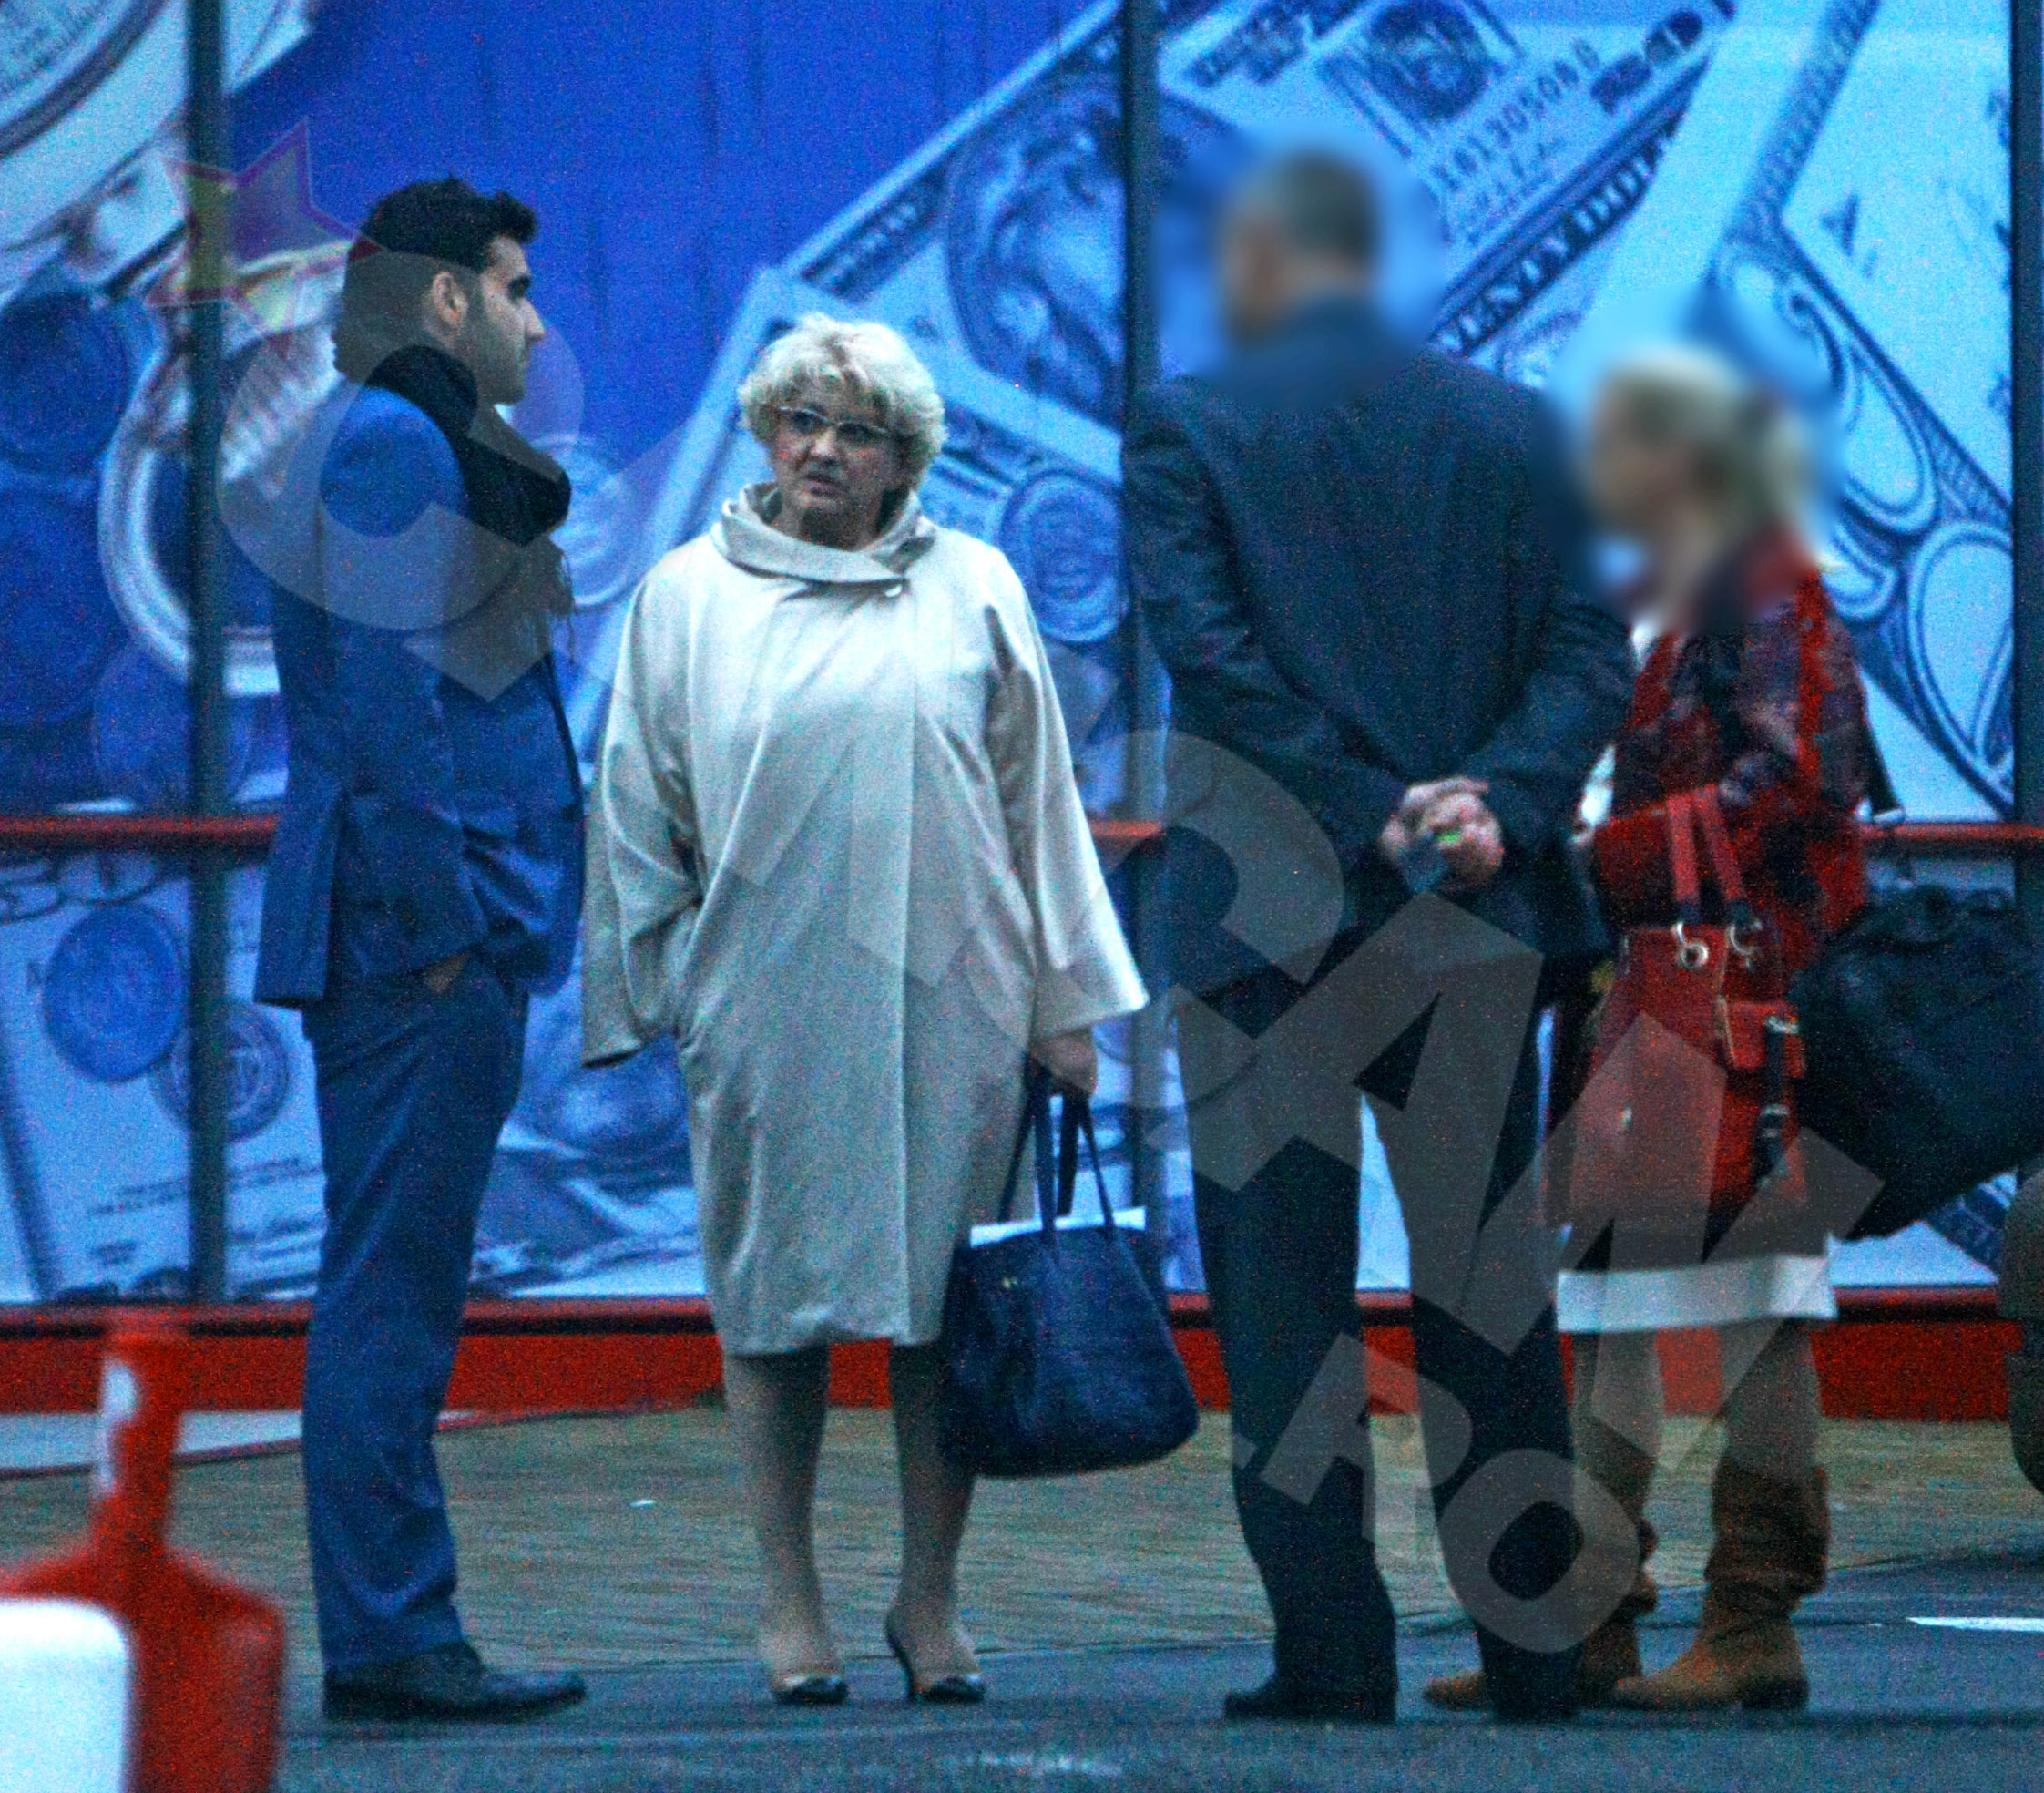 Laurentiu si mama lui au plecat separati de la centrul comercial, femeia intr-o masina, fiul ei in alta